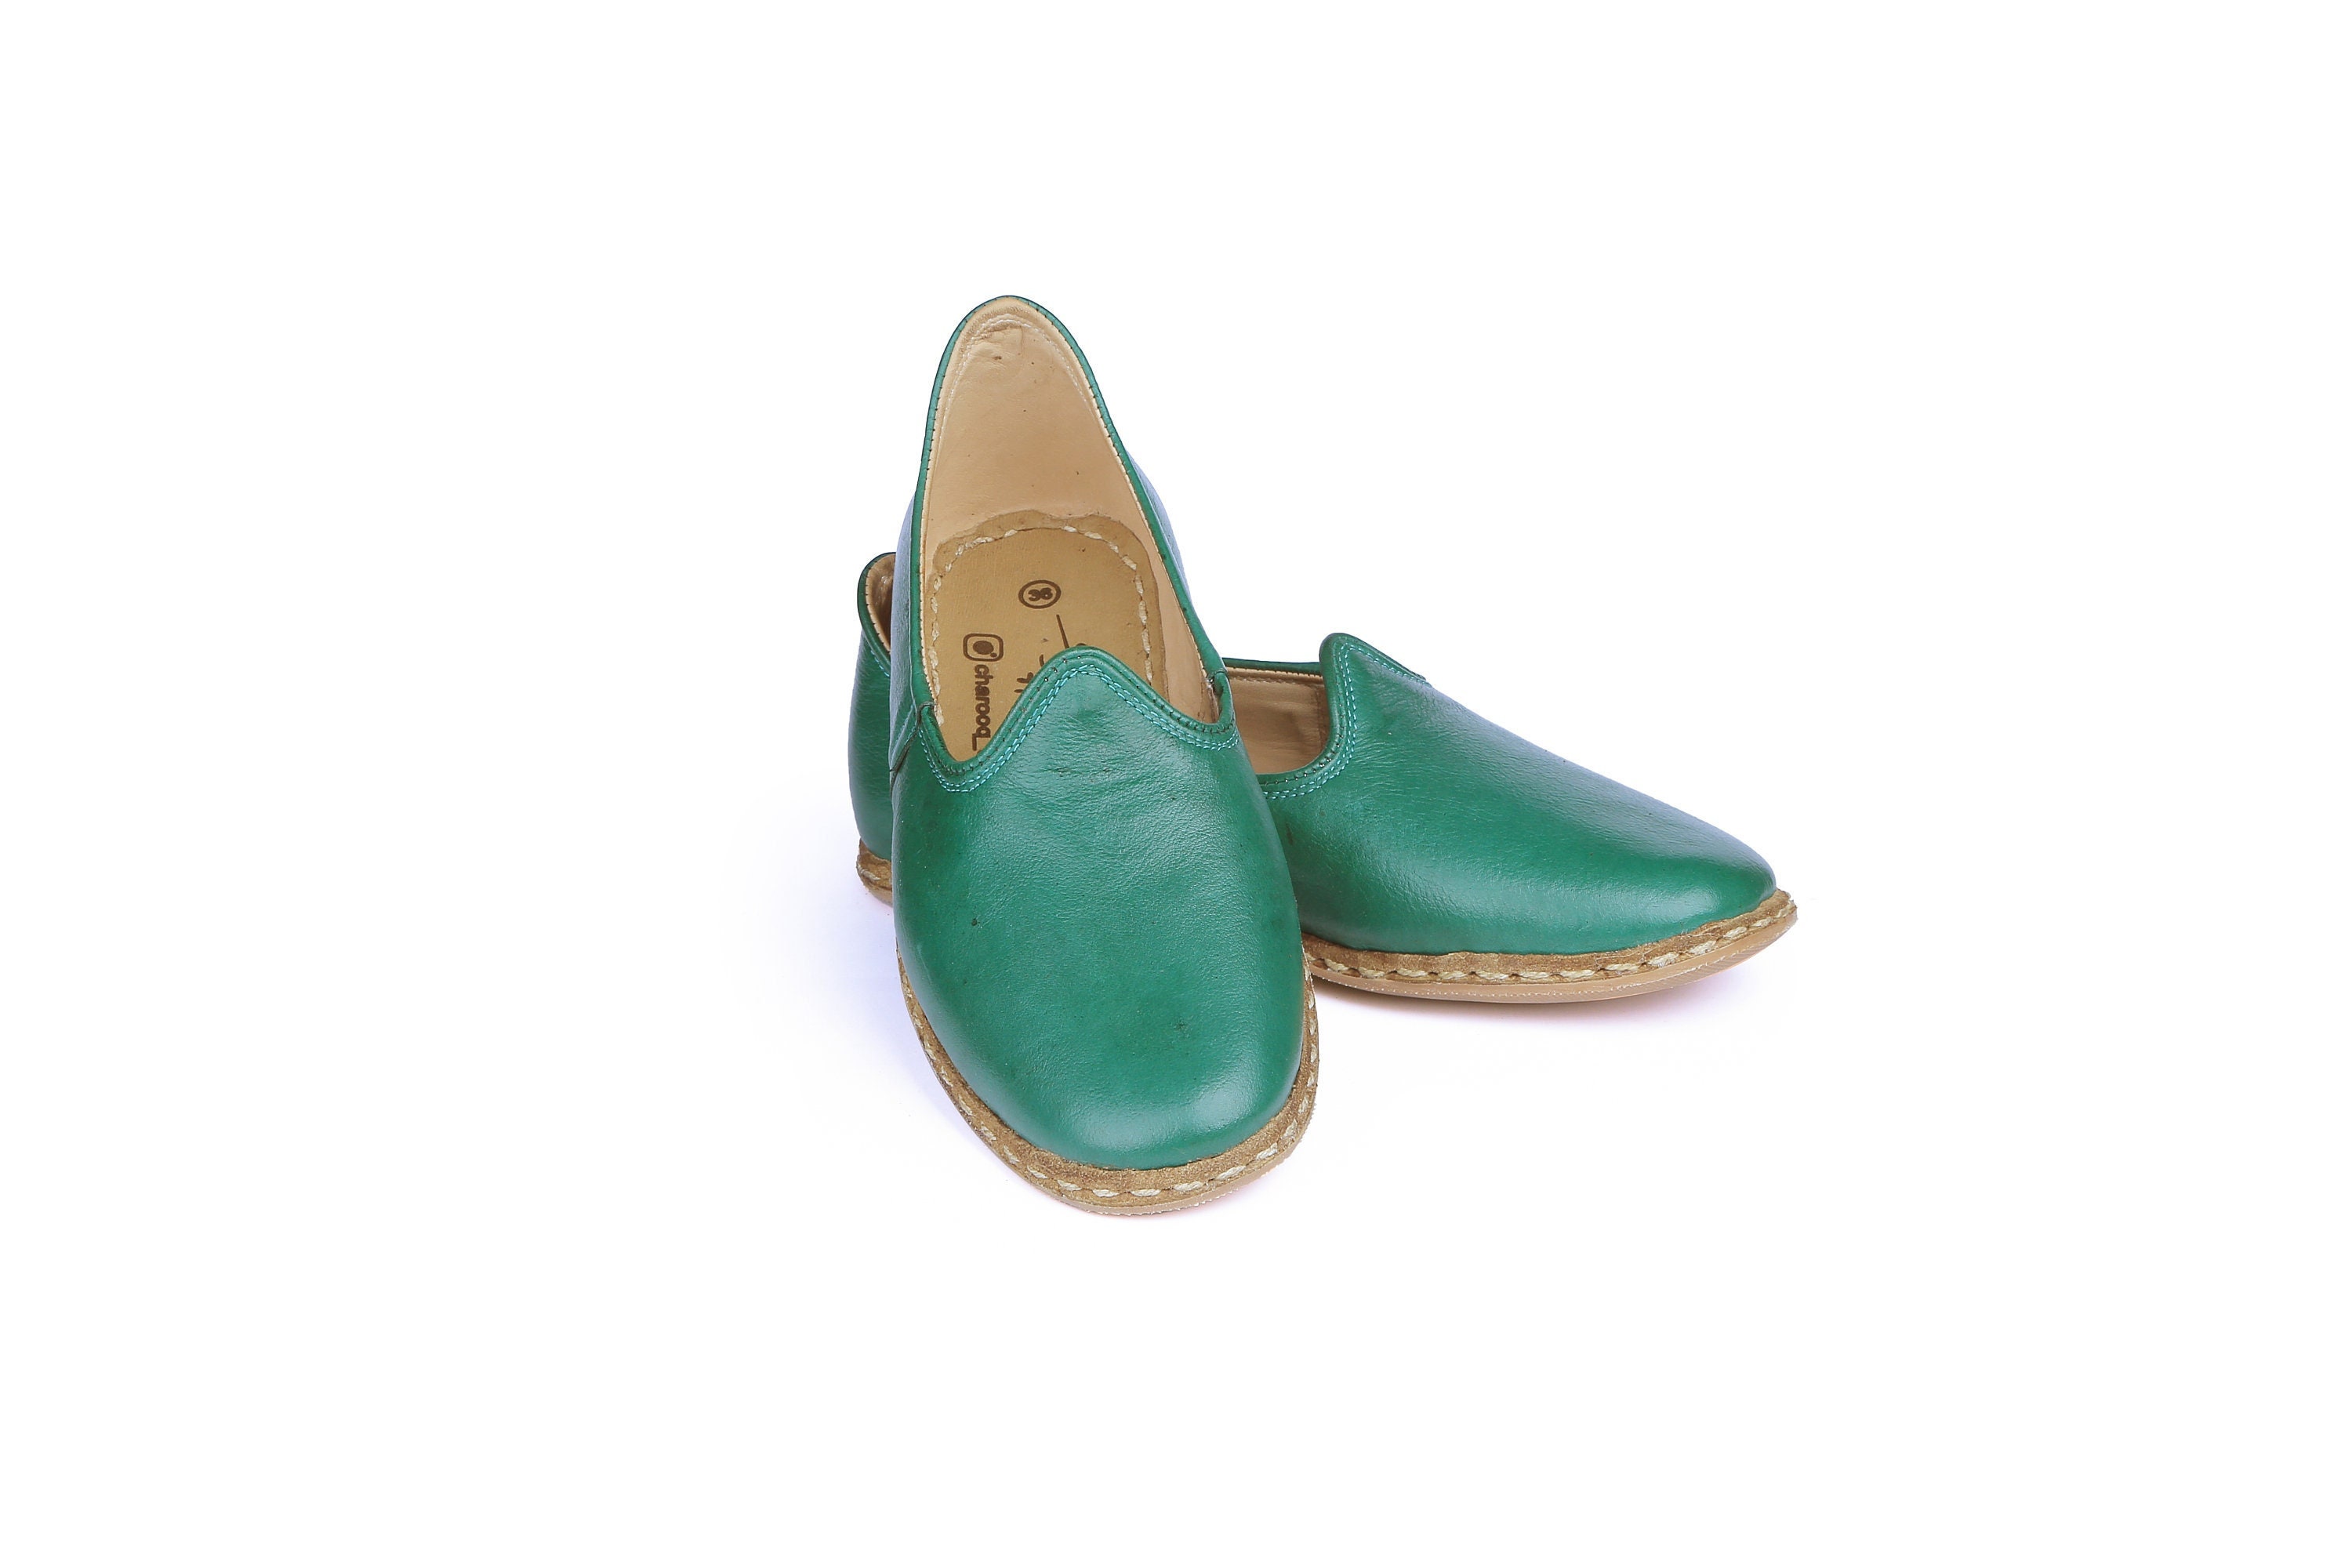 ineffektiv vand Præstation Women's Leather Comfort Shoes Handmade Green Color - Etsy Israel